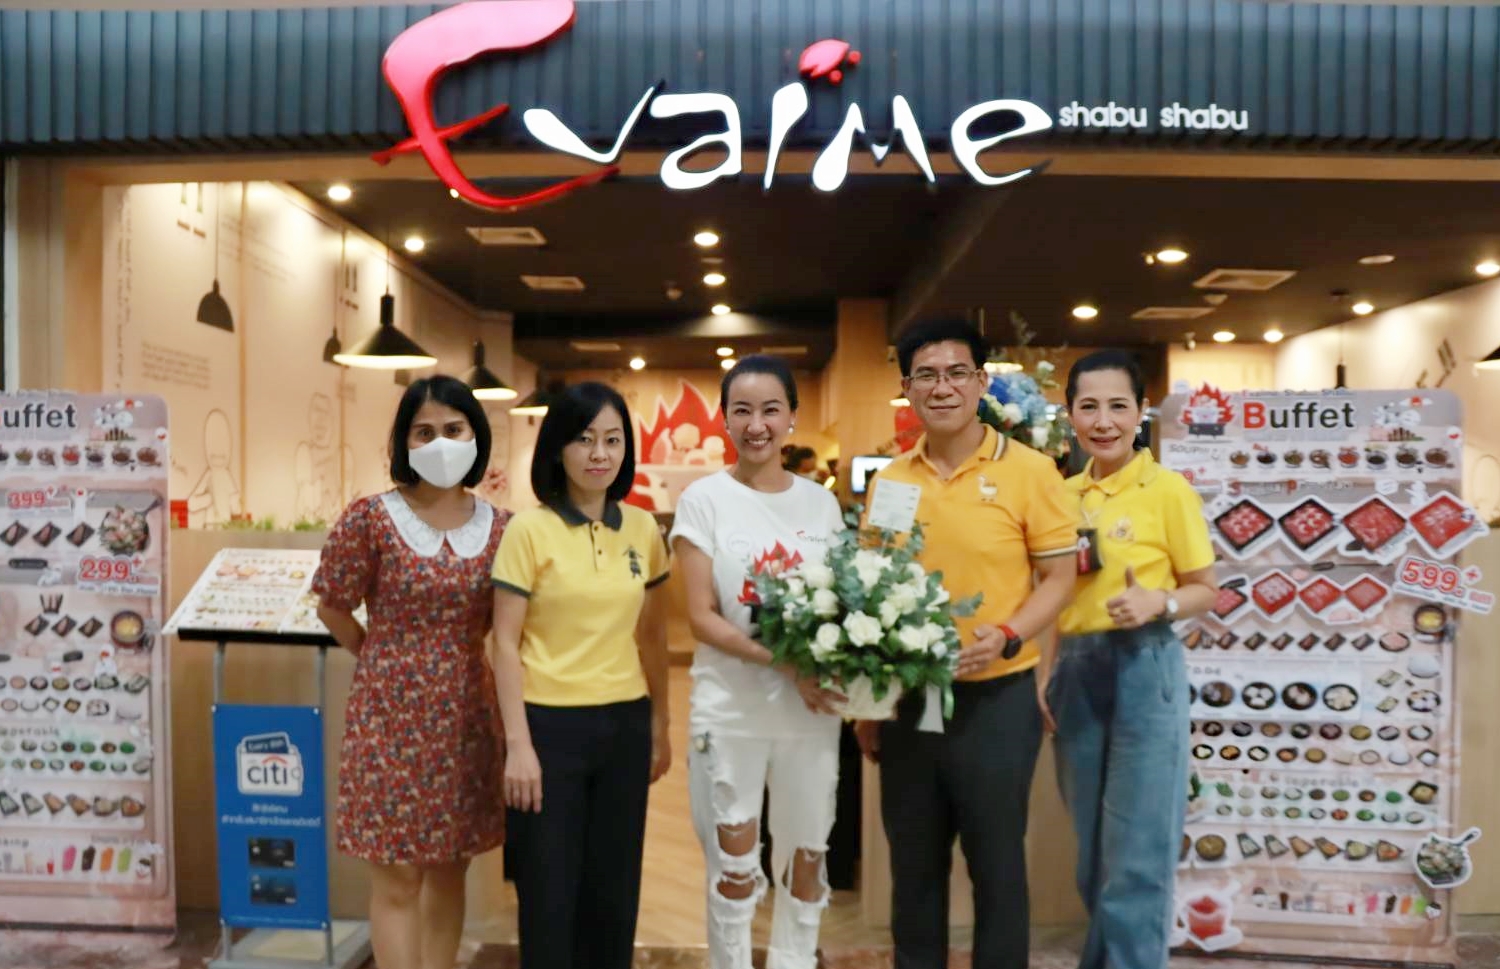 ภาพข่าว: เอ็ม บี เค เซ็นเตอร์ มอบดอกไม้แสดงความยินดีเปิดร้านใหม่ อีวาไอเมะ ชาบู ชาบู